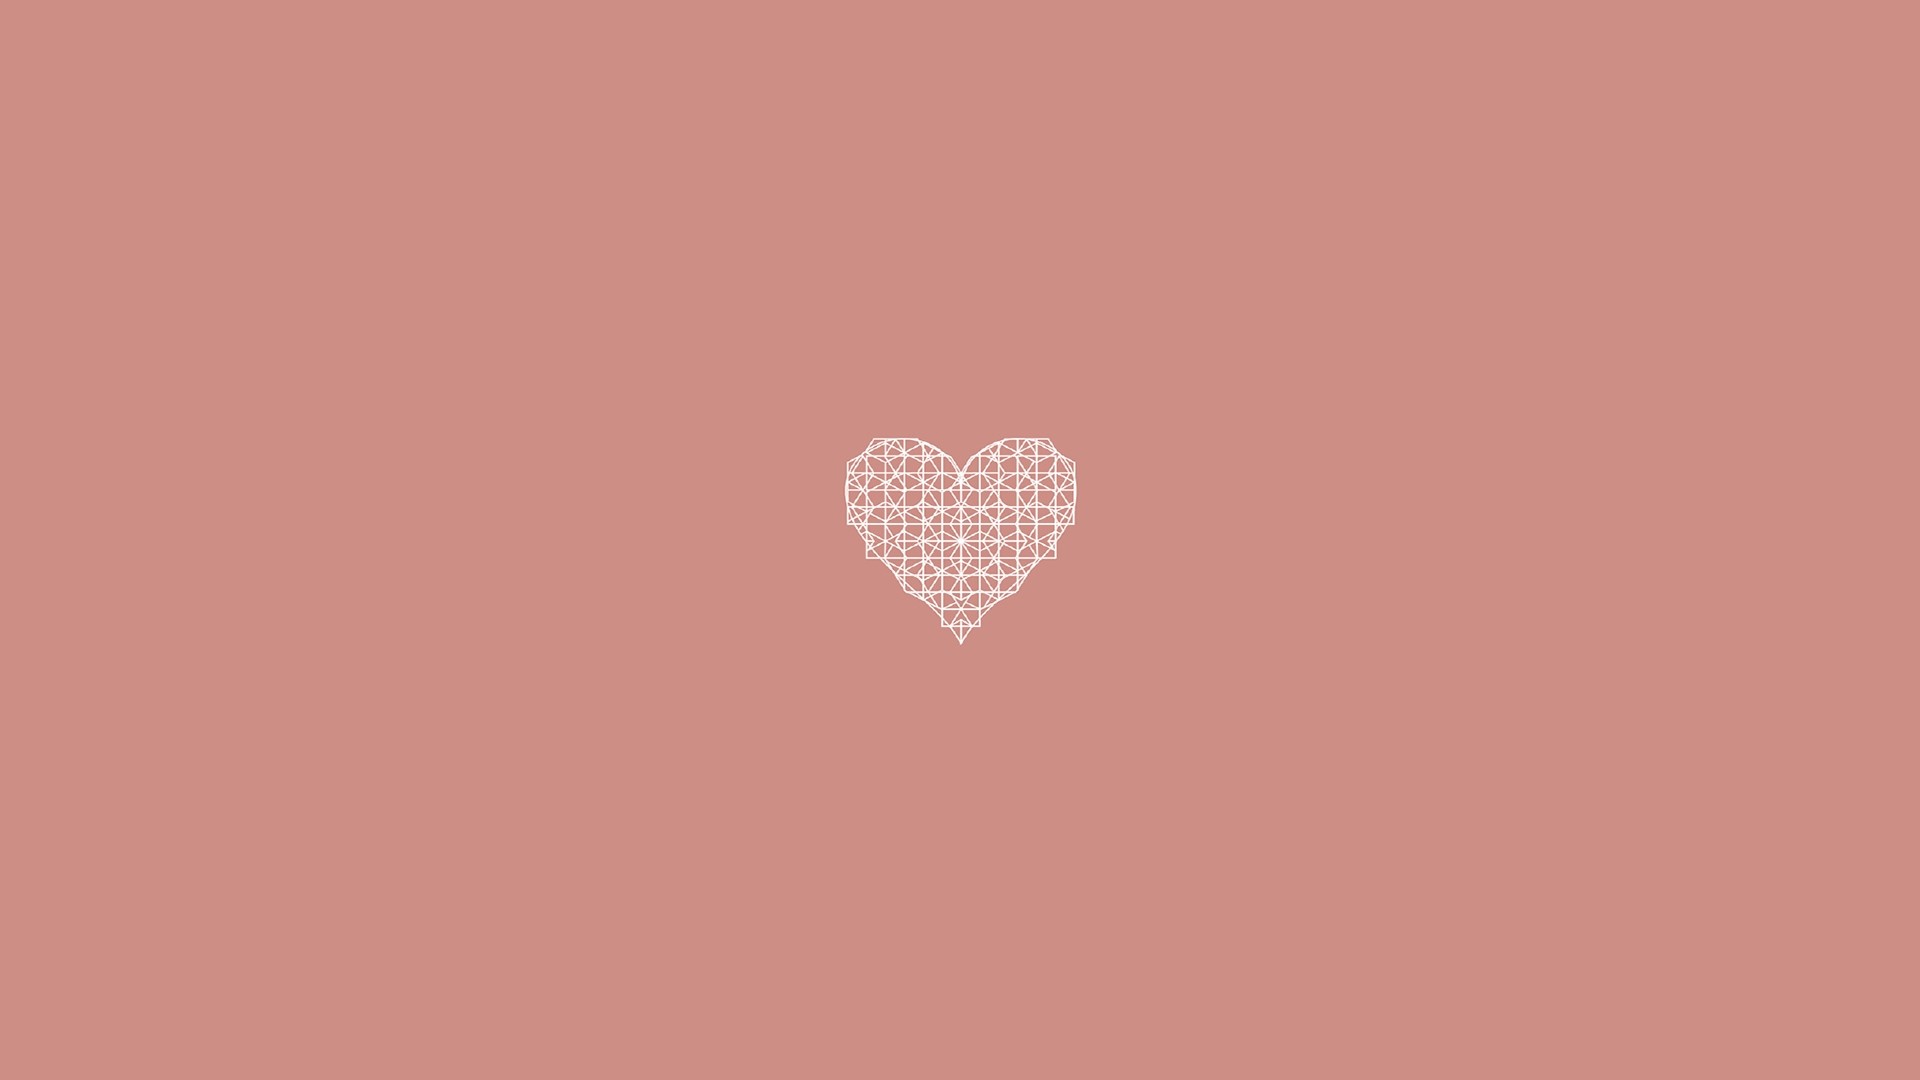 17+] Heart PC Wallpapers - WallpaperSafari